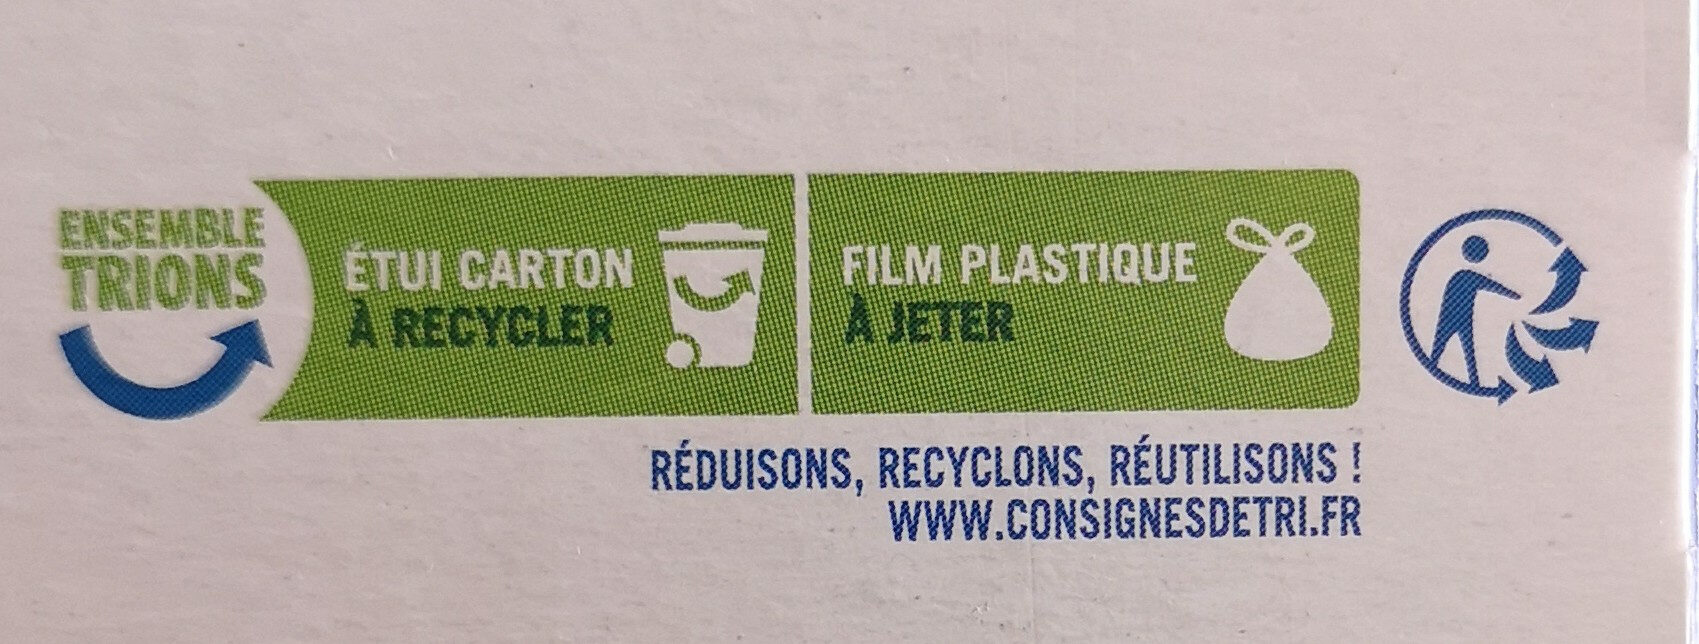 Galette pur beurre - Instrucciones de reciclaje y/o información de embalaje - fr